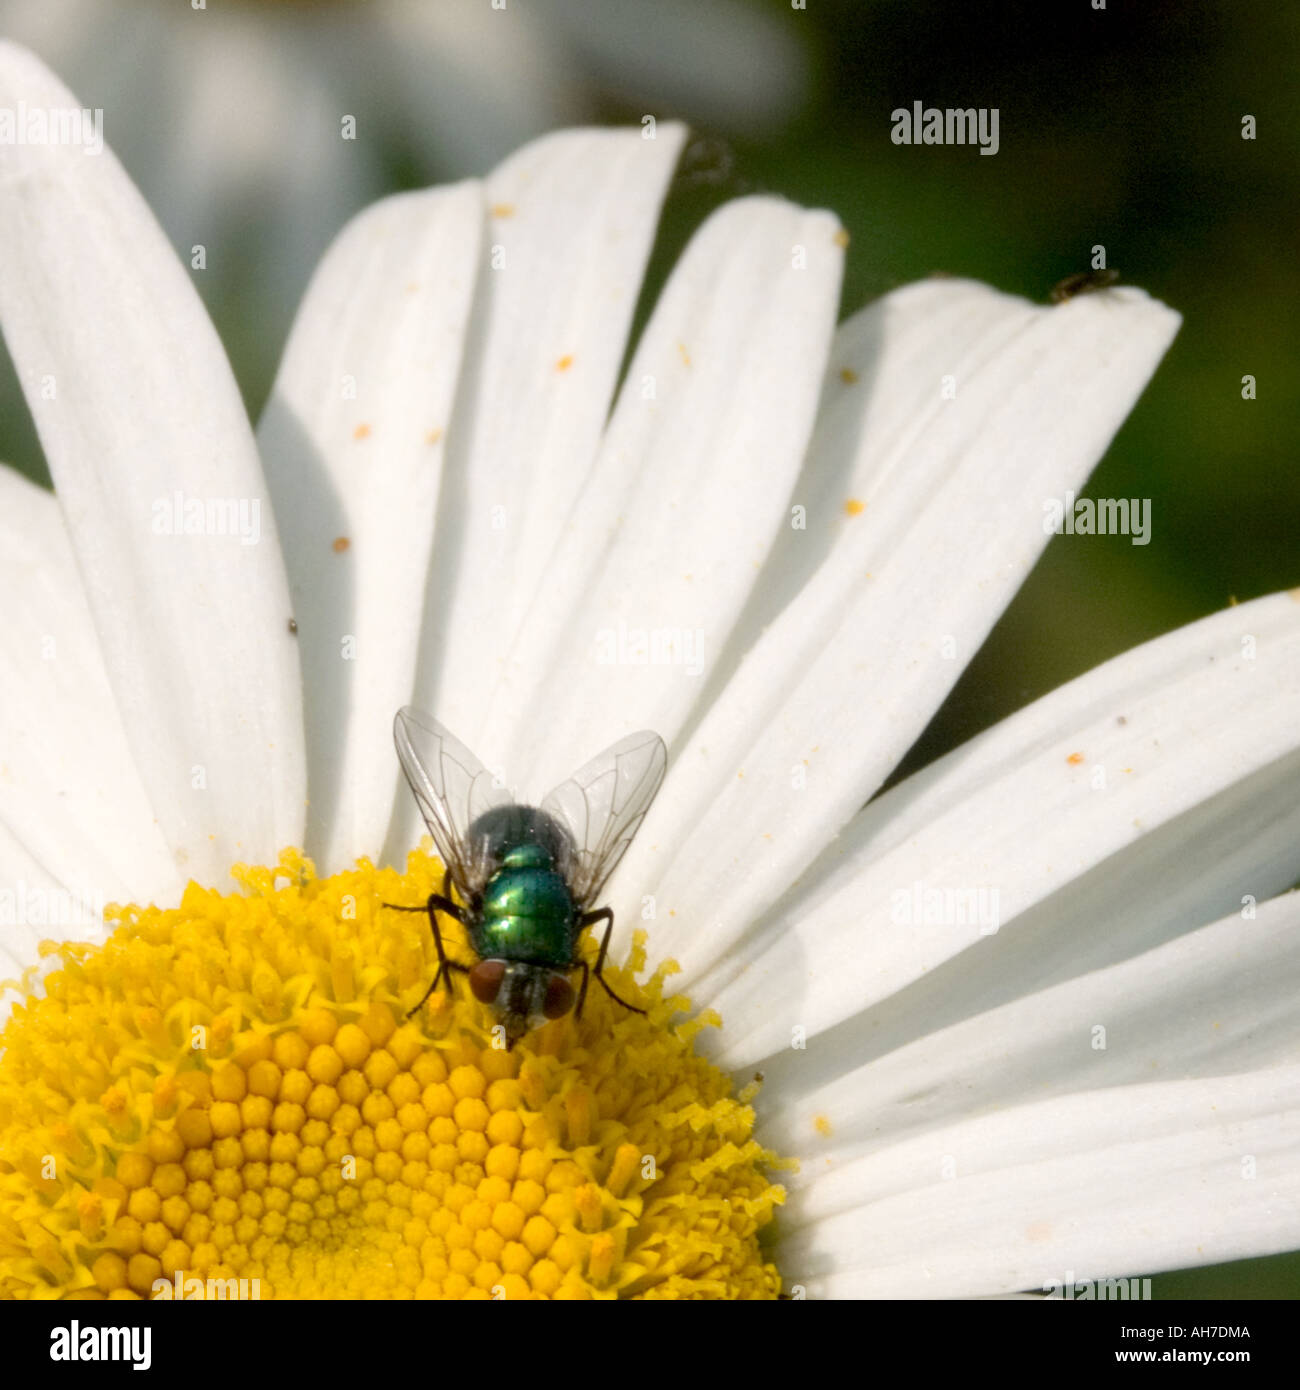 Greenbottle fly am Zentrum von Margarete Blume Stockfotografie - Alamy